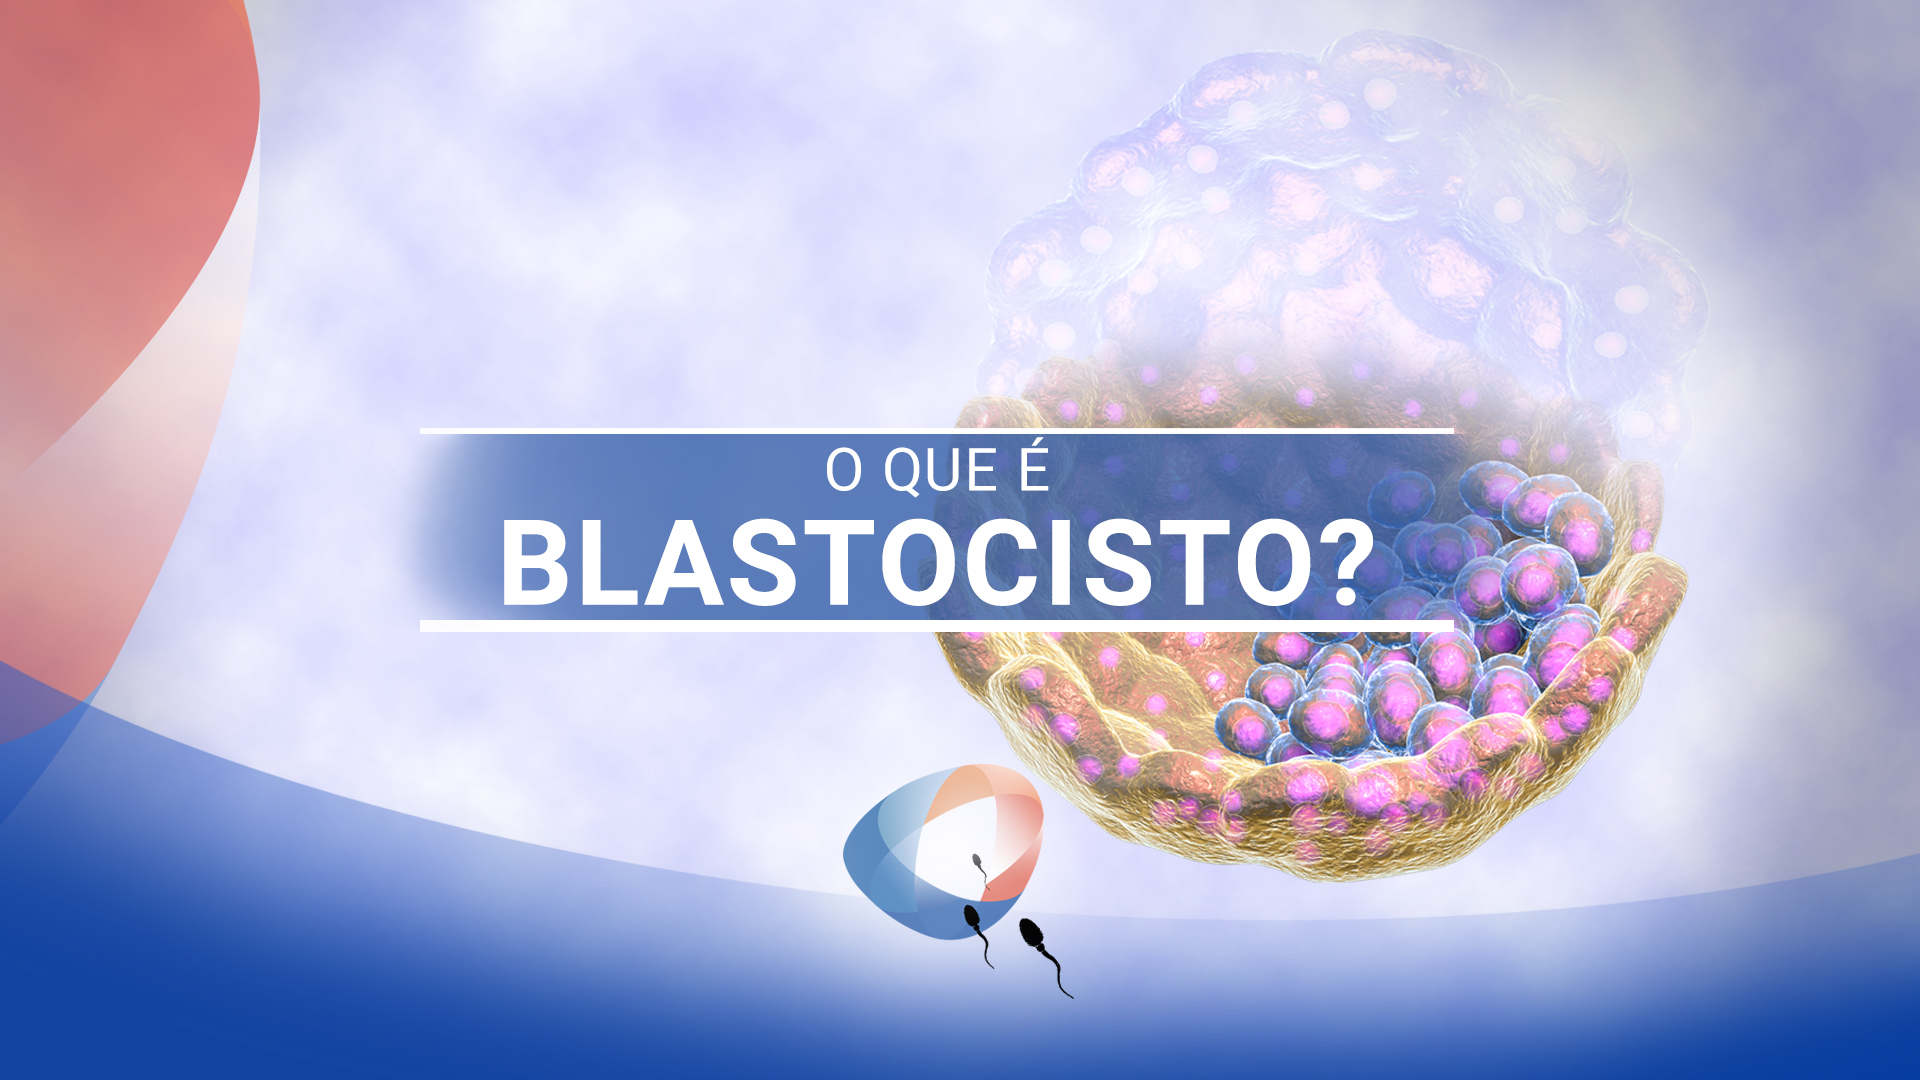 O que é blastocisto?